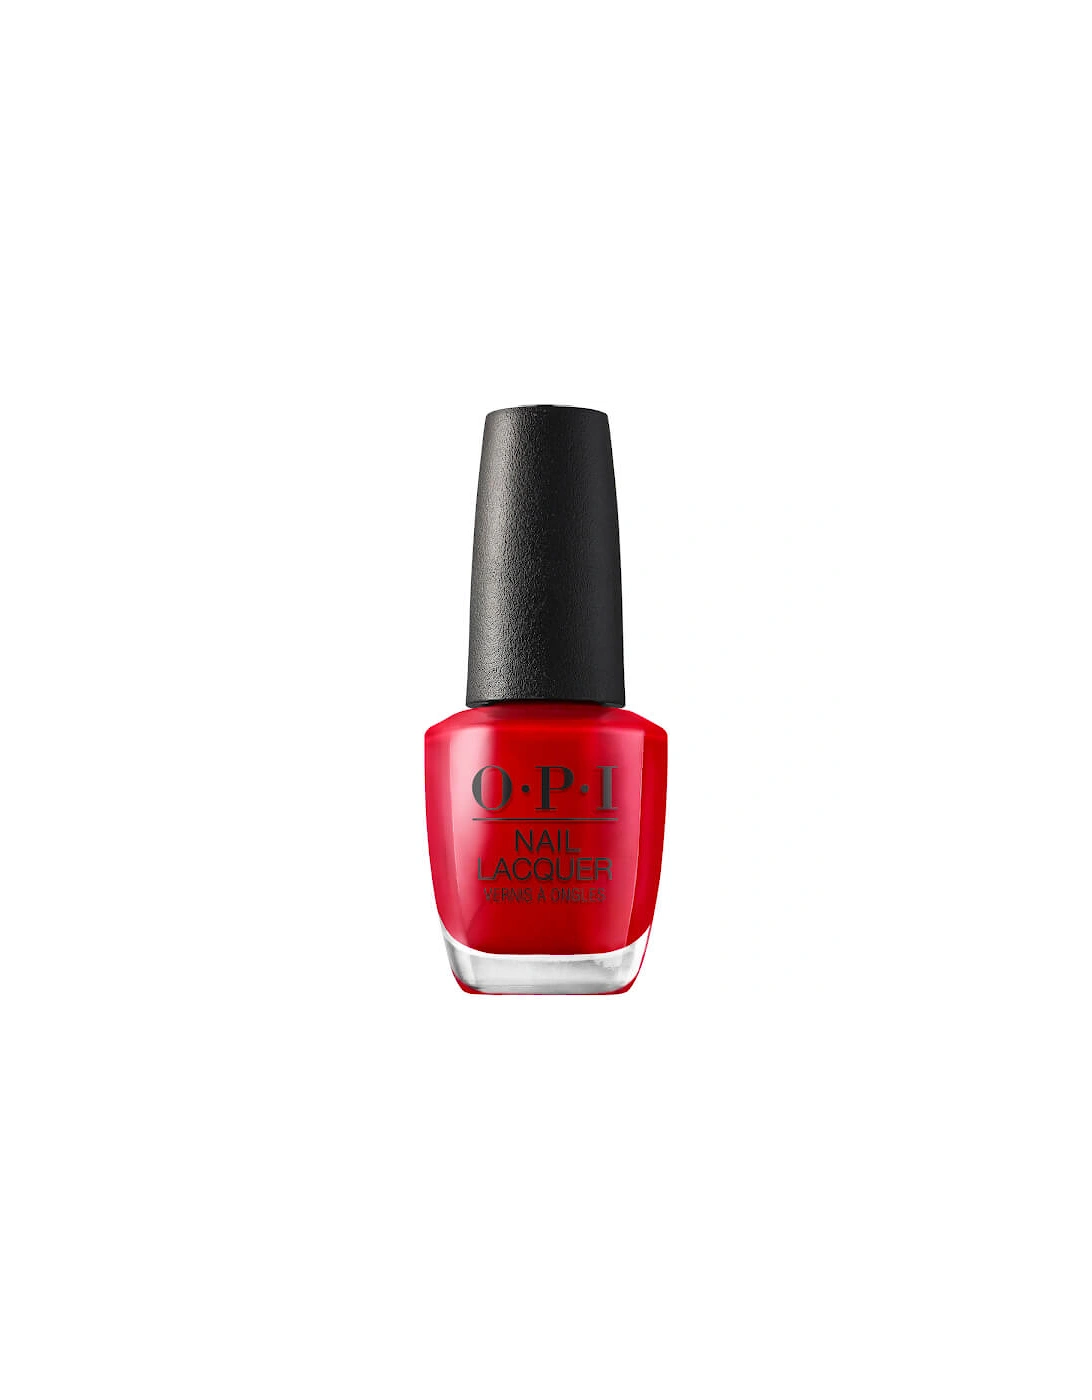 Nail Polish - Big Apple Red 15ml - OPI, 2 of 1